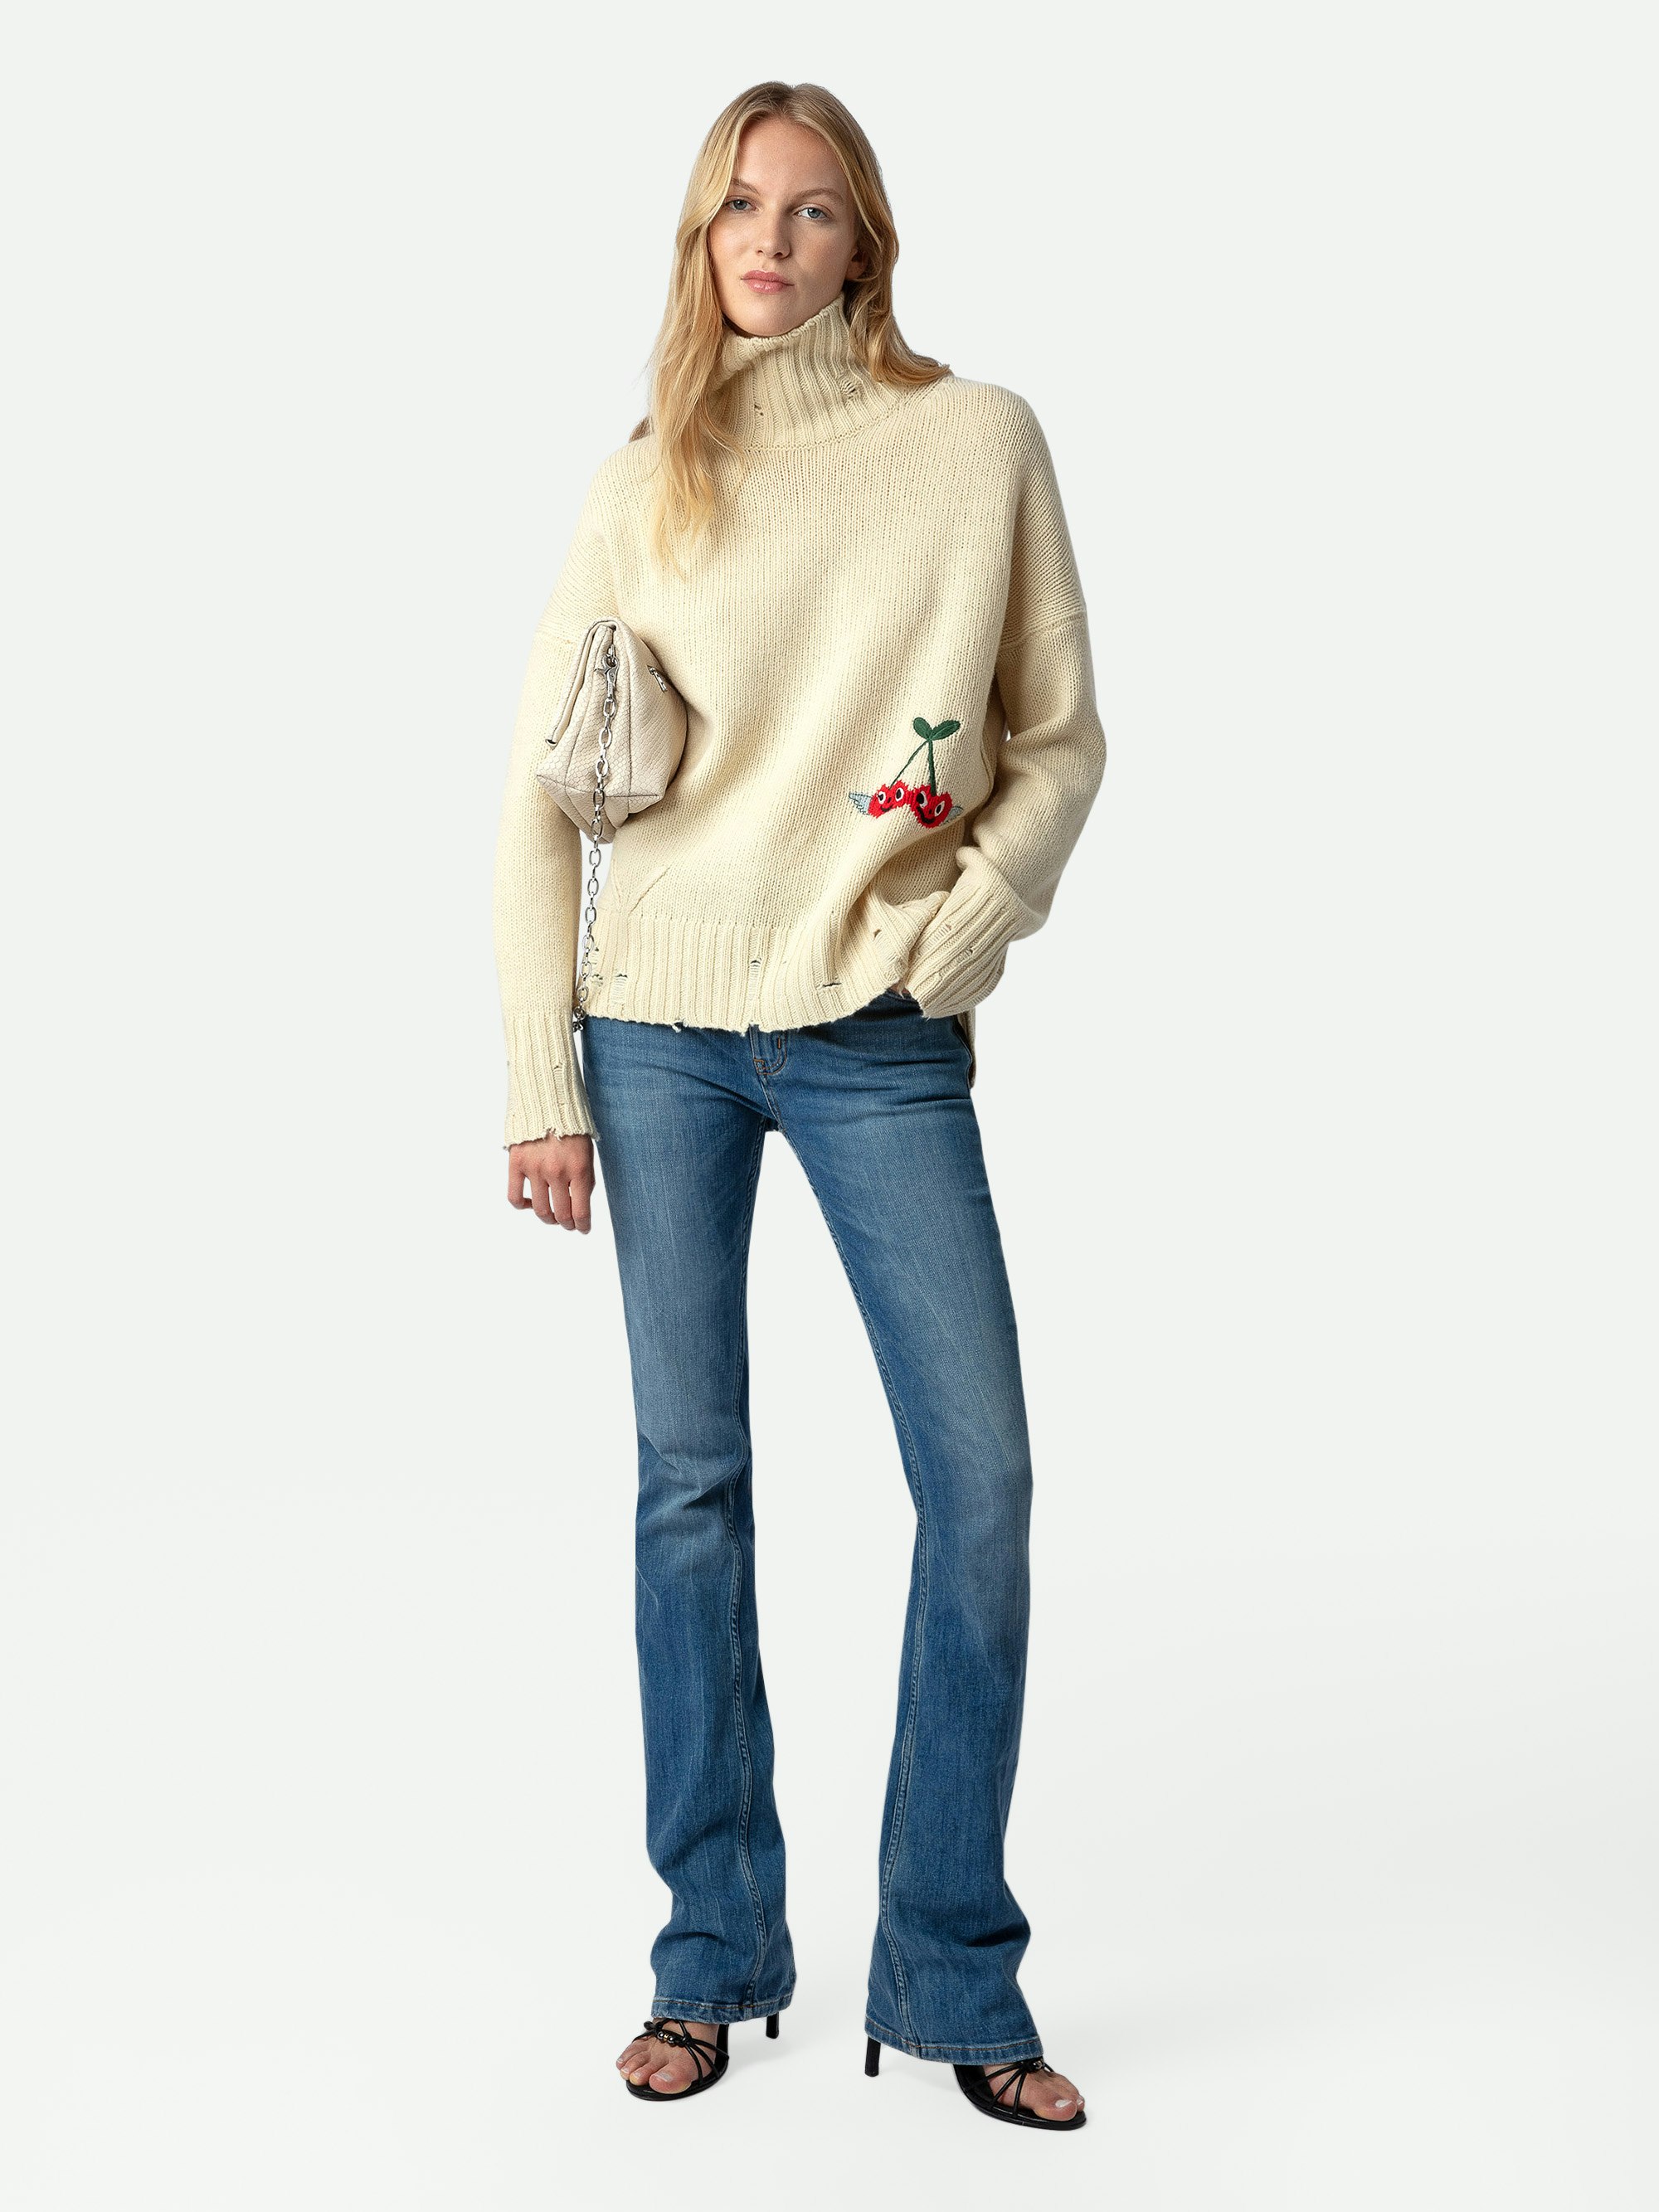 Jersey Bleeza 100% Lana Merina - Jersey de 100% lana merina en tono crudo con efecto usado, de cuello alto y con detalles decorativos de Humberto Cruz.